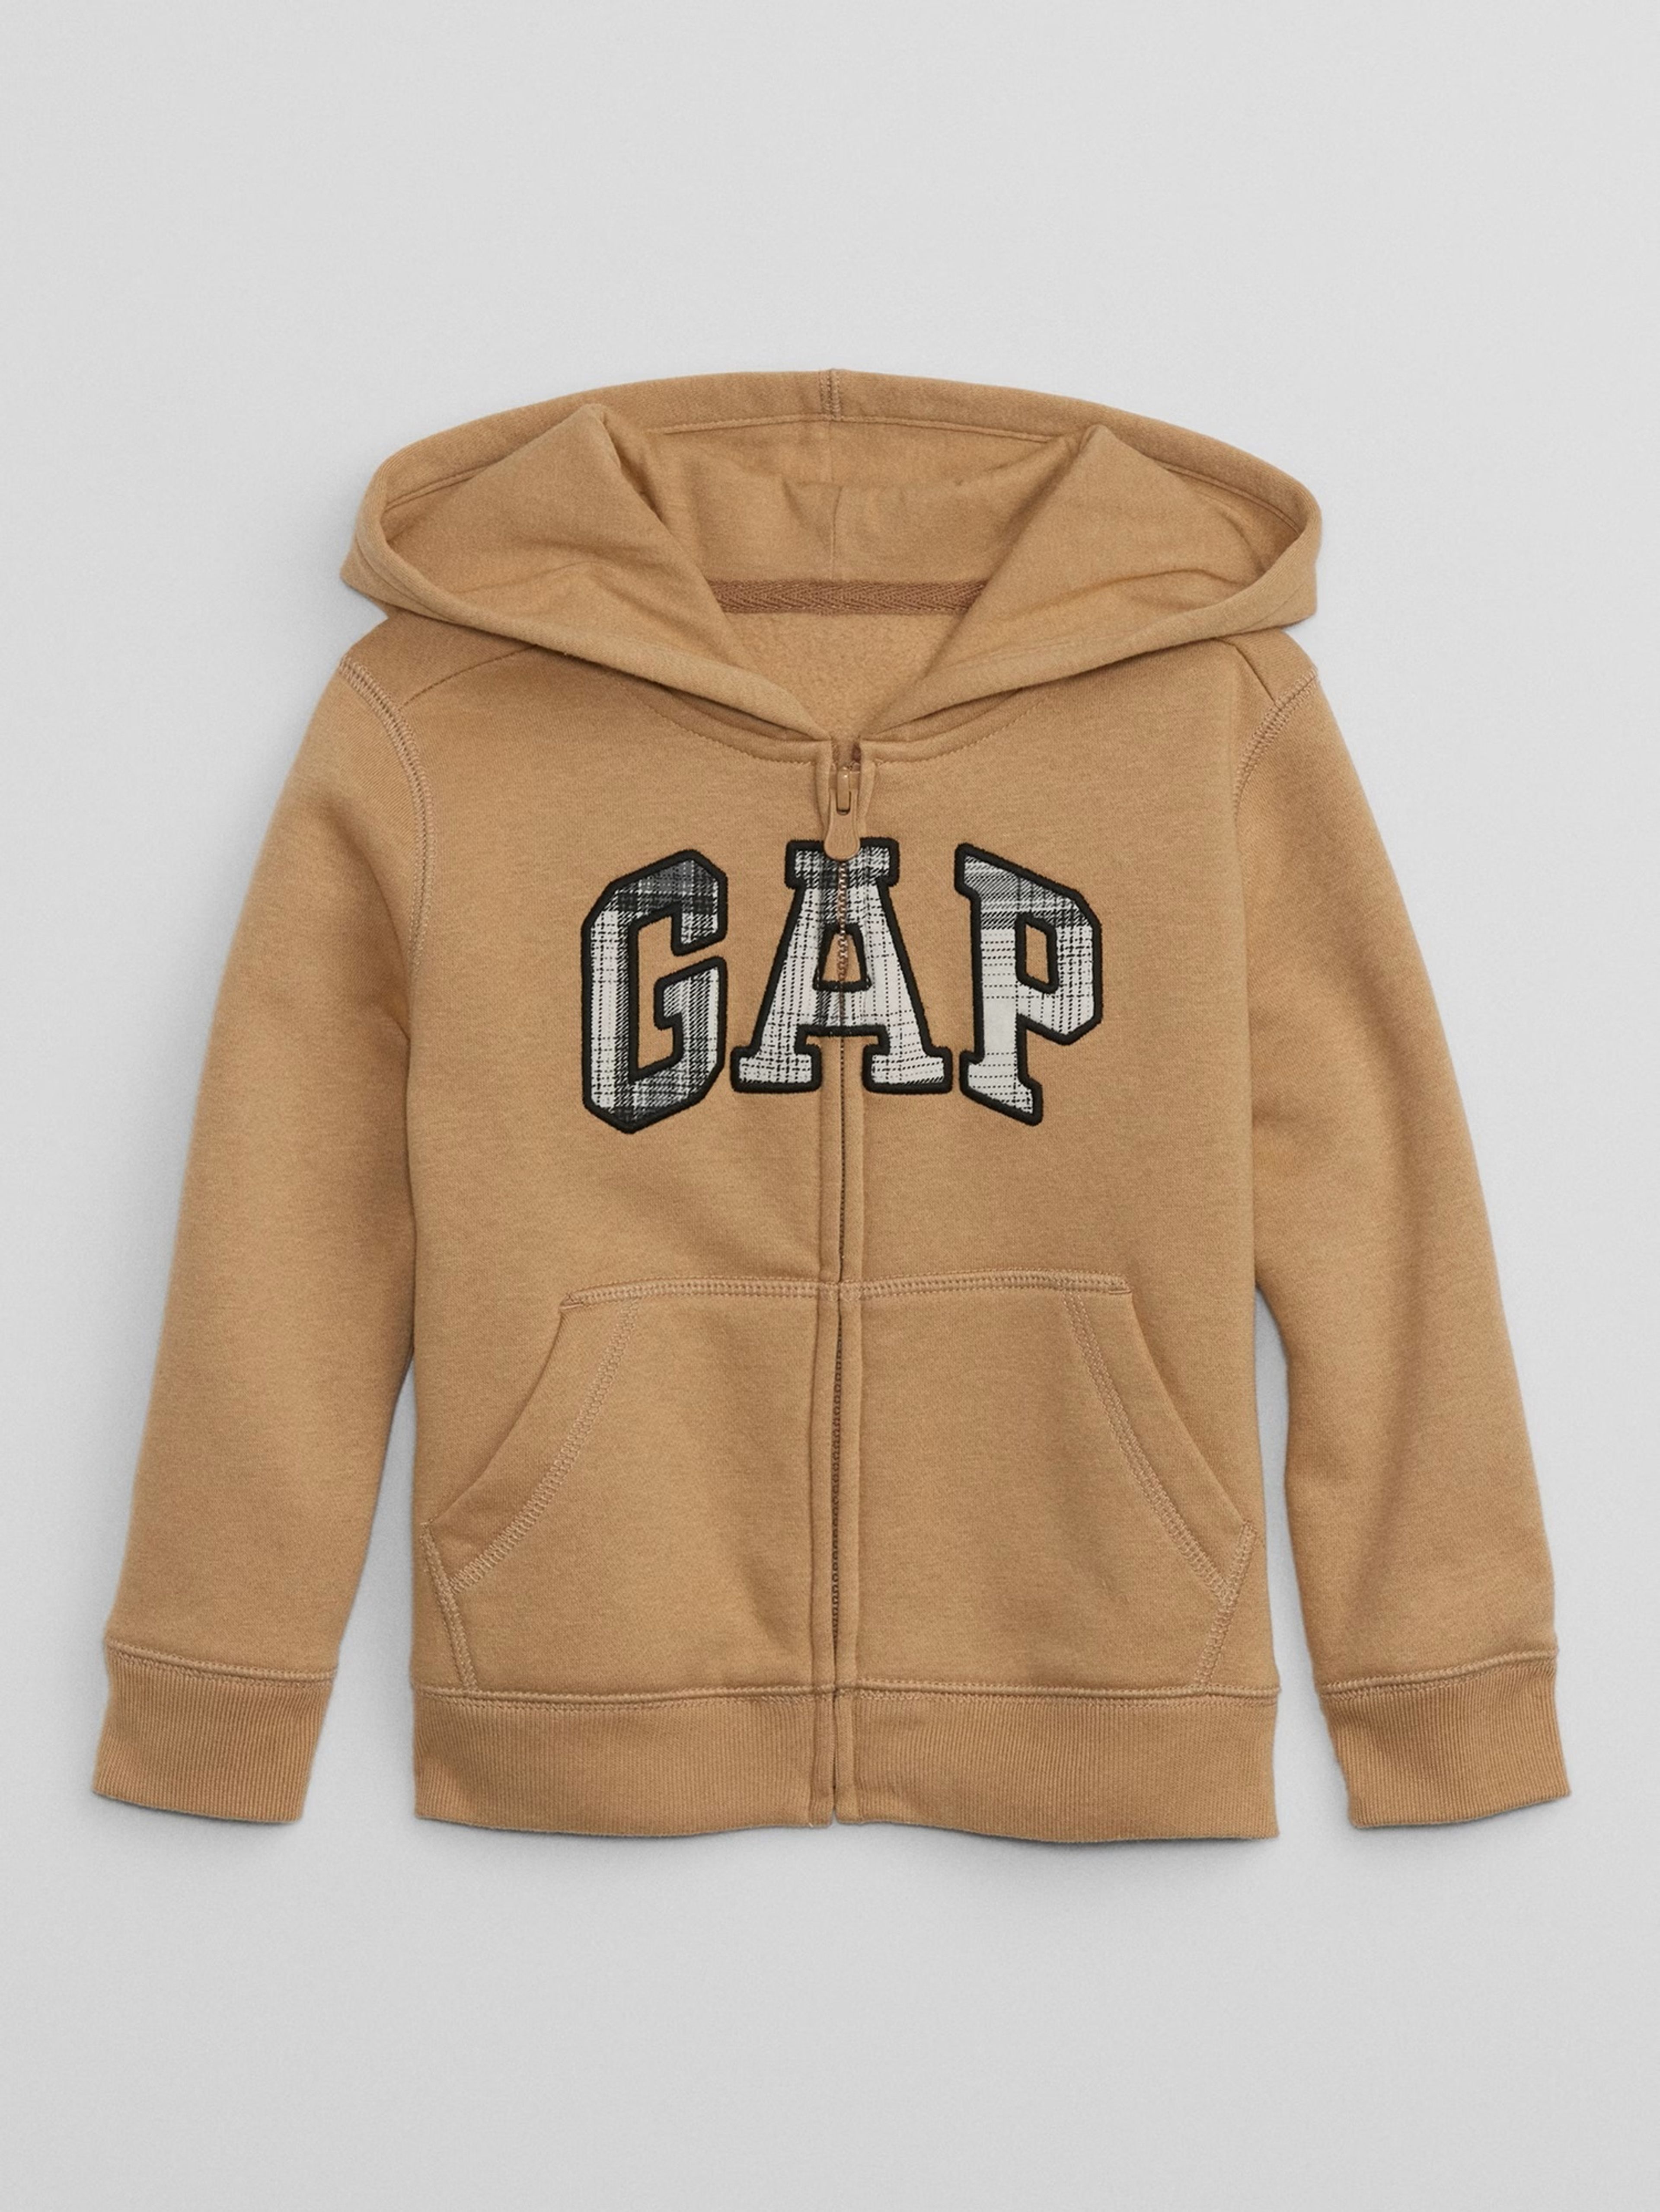 Kinder Sweatshirt mit GAP Logo